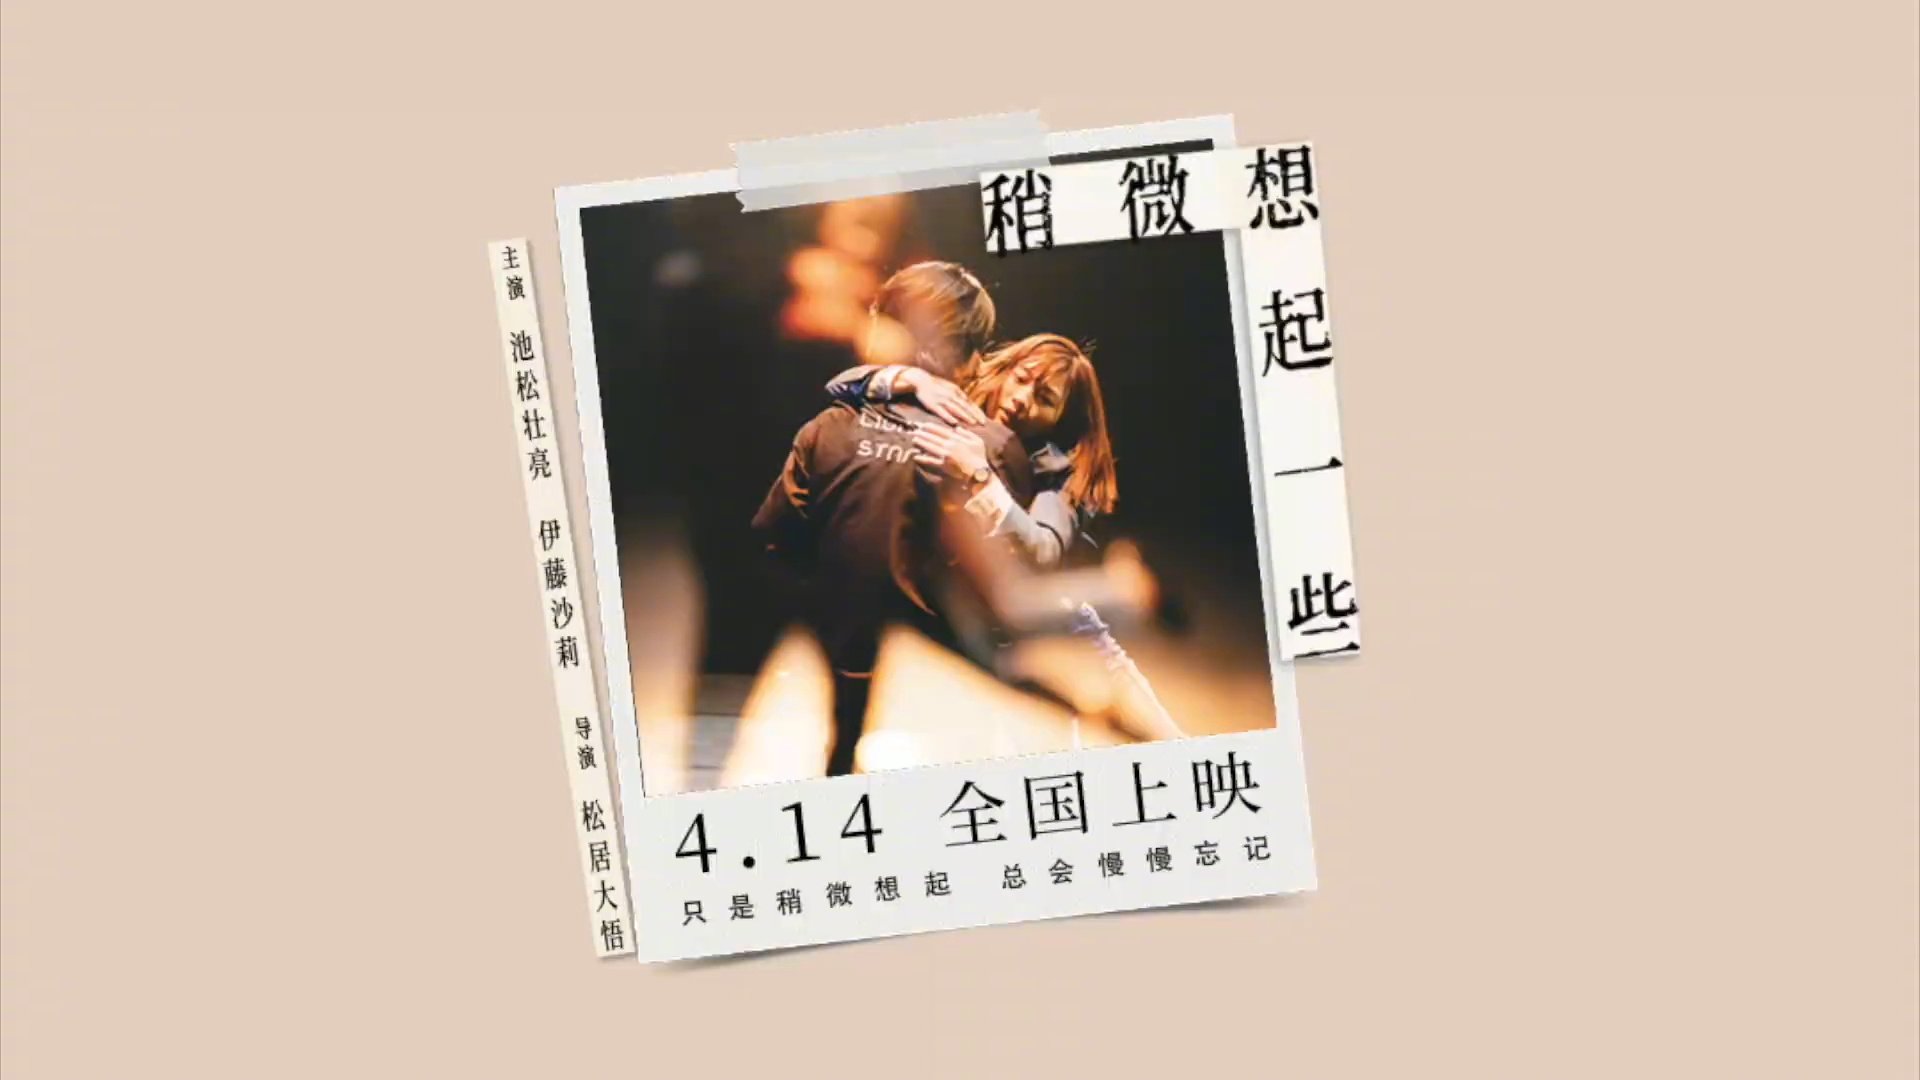 日本高分爱情电影《稍微想起一些》发布定档预告，定档4月14日